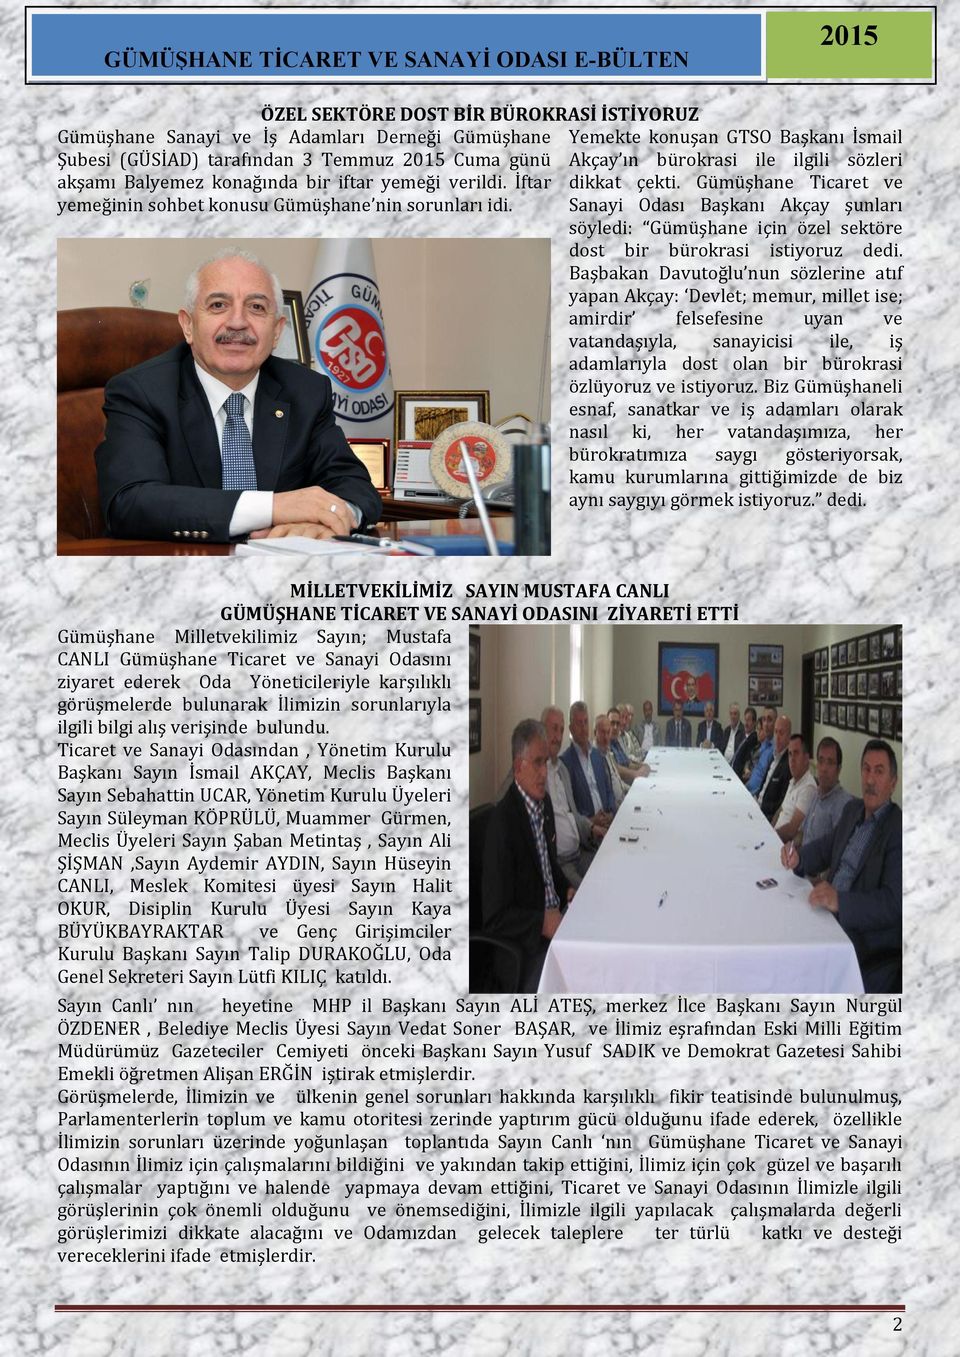 Gümüşhane Ticaret ve Sanayi Odası Başkanı Akçay şunları söyledi: Gümüşhane için özel sektöre dost bir bürokrasi istiyoruz dedi.